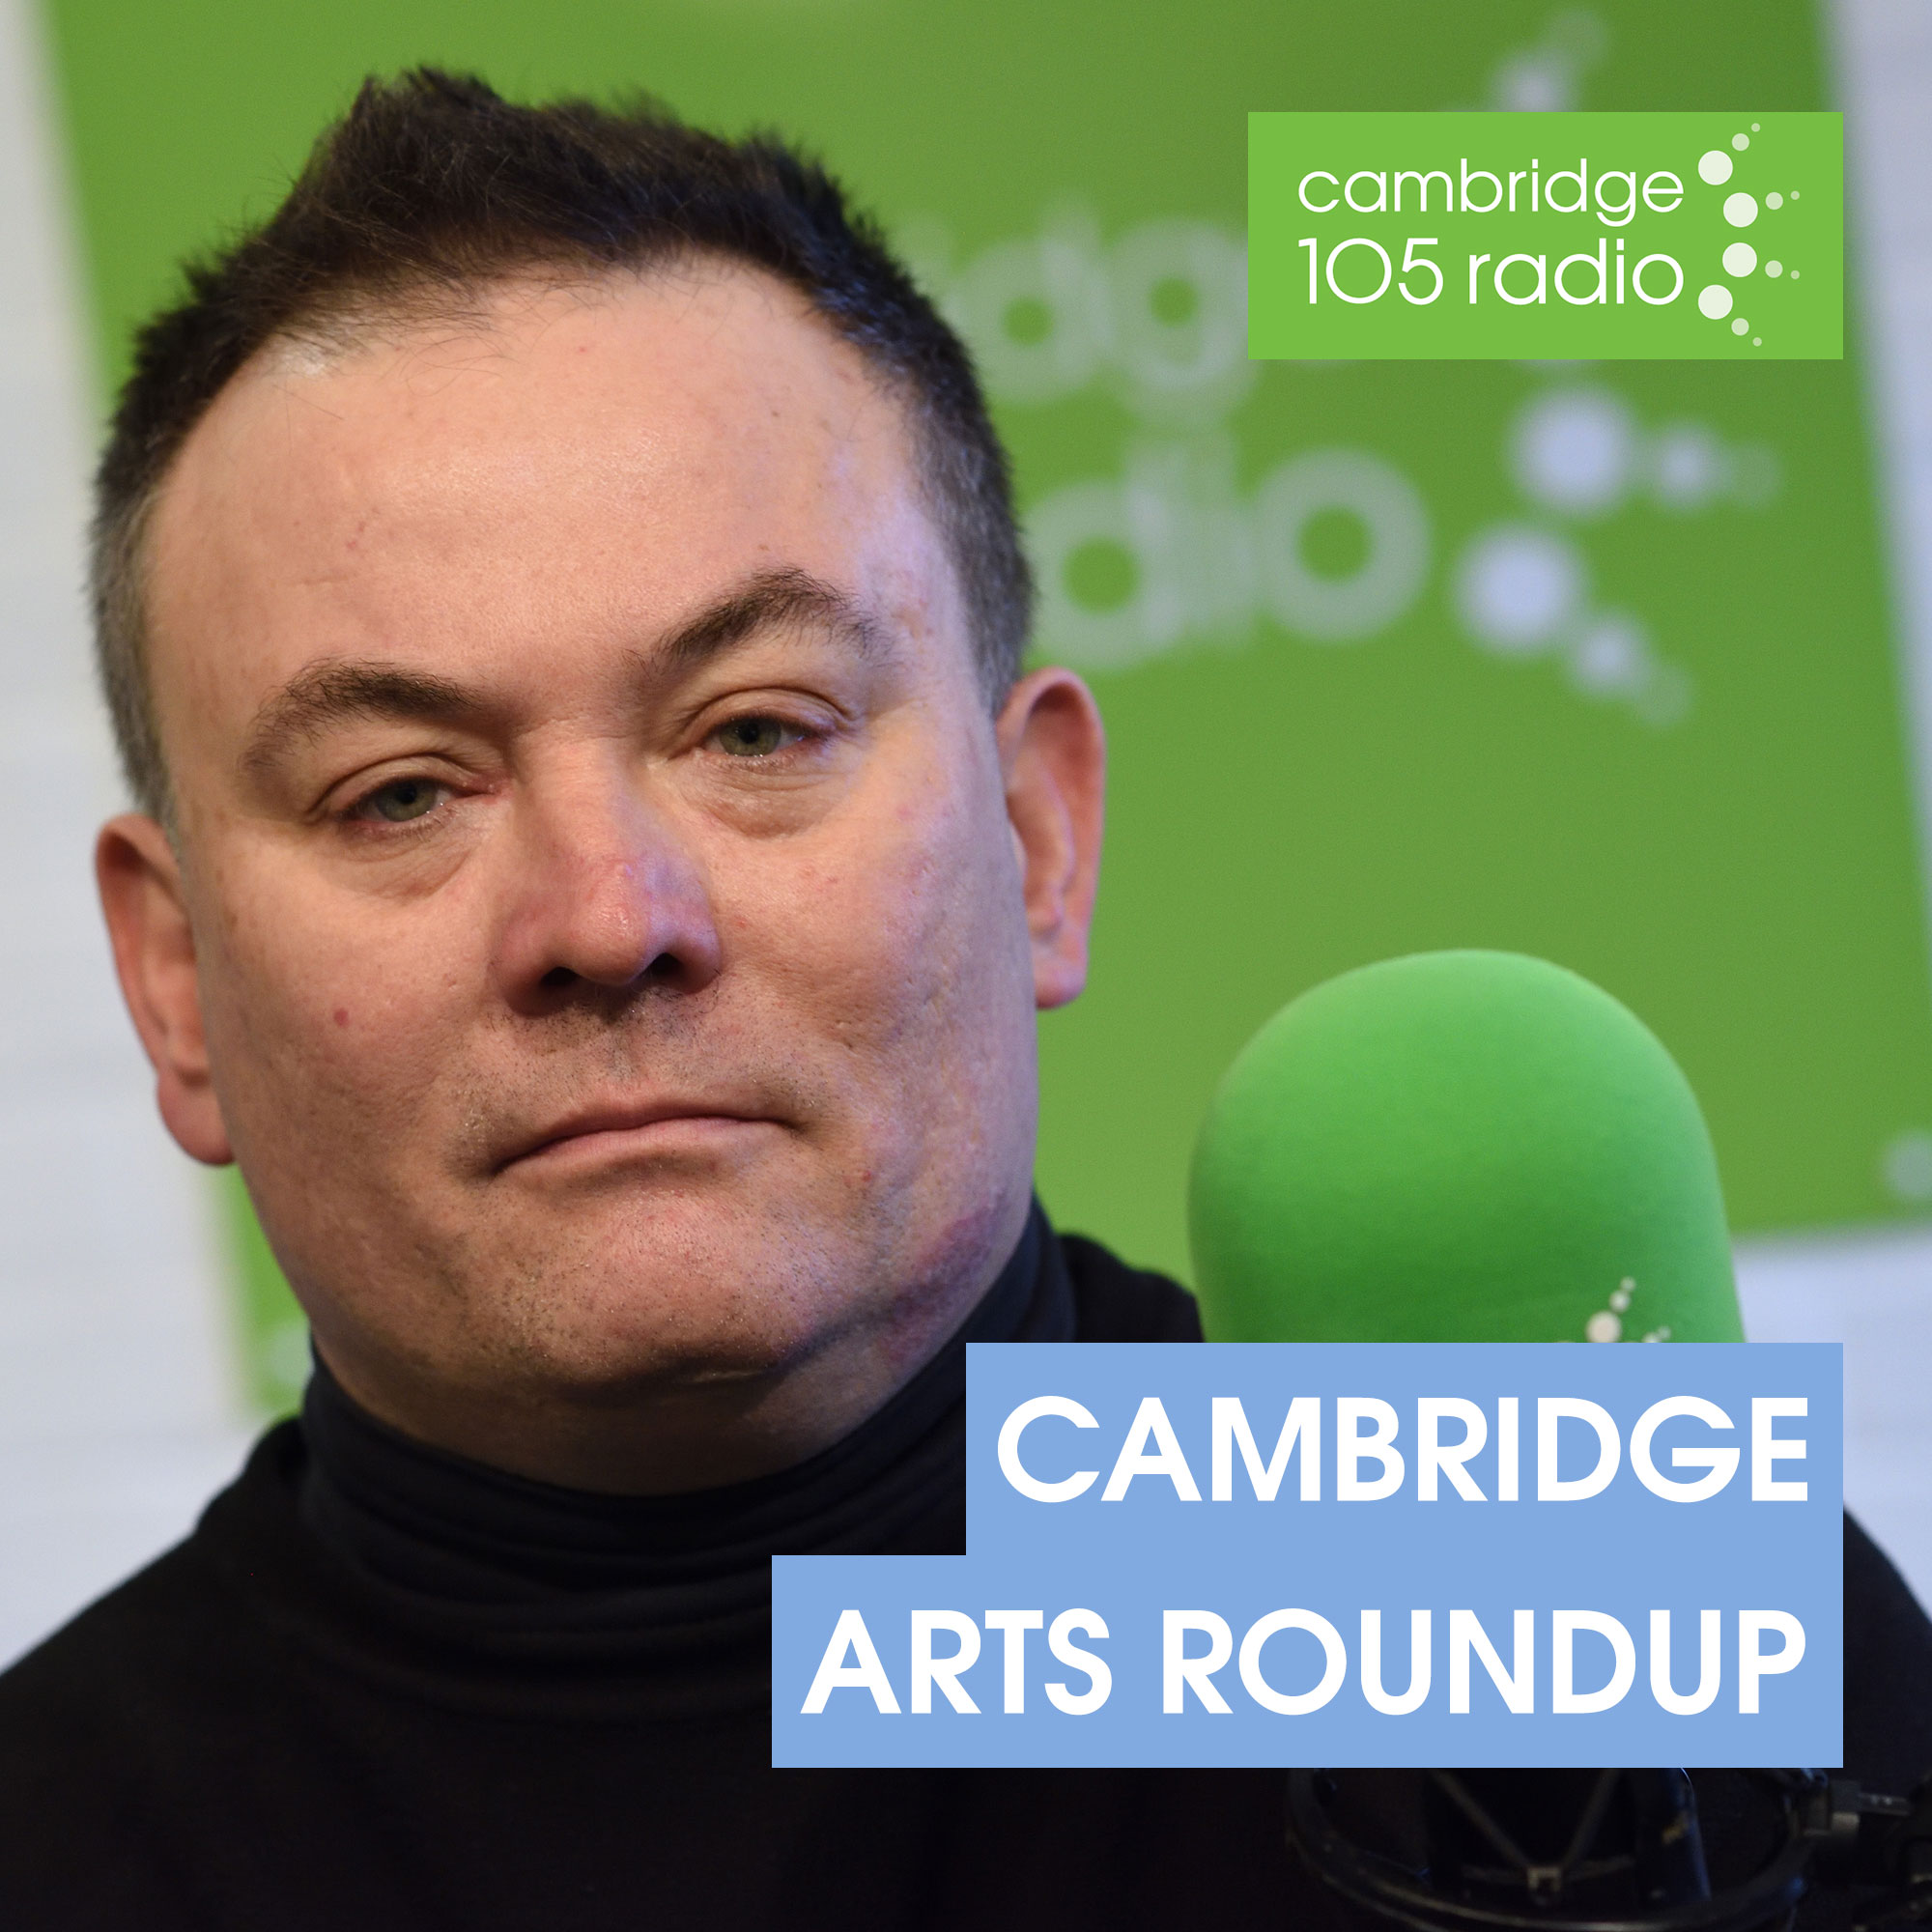 Cambridge Arts Roundup